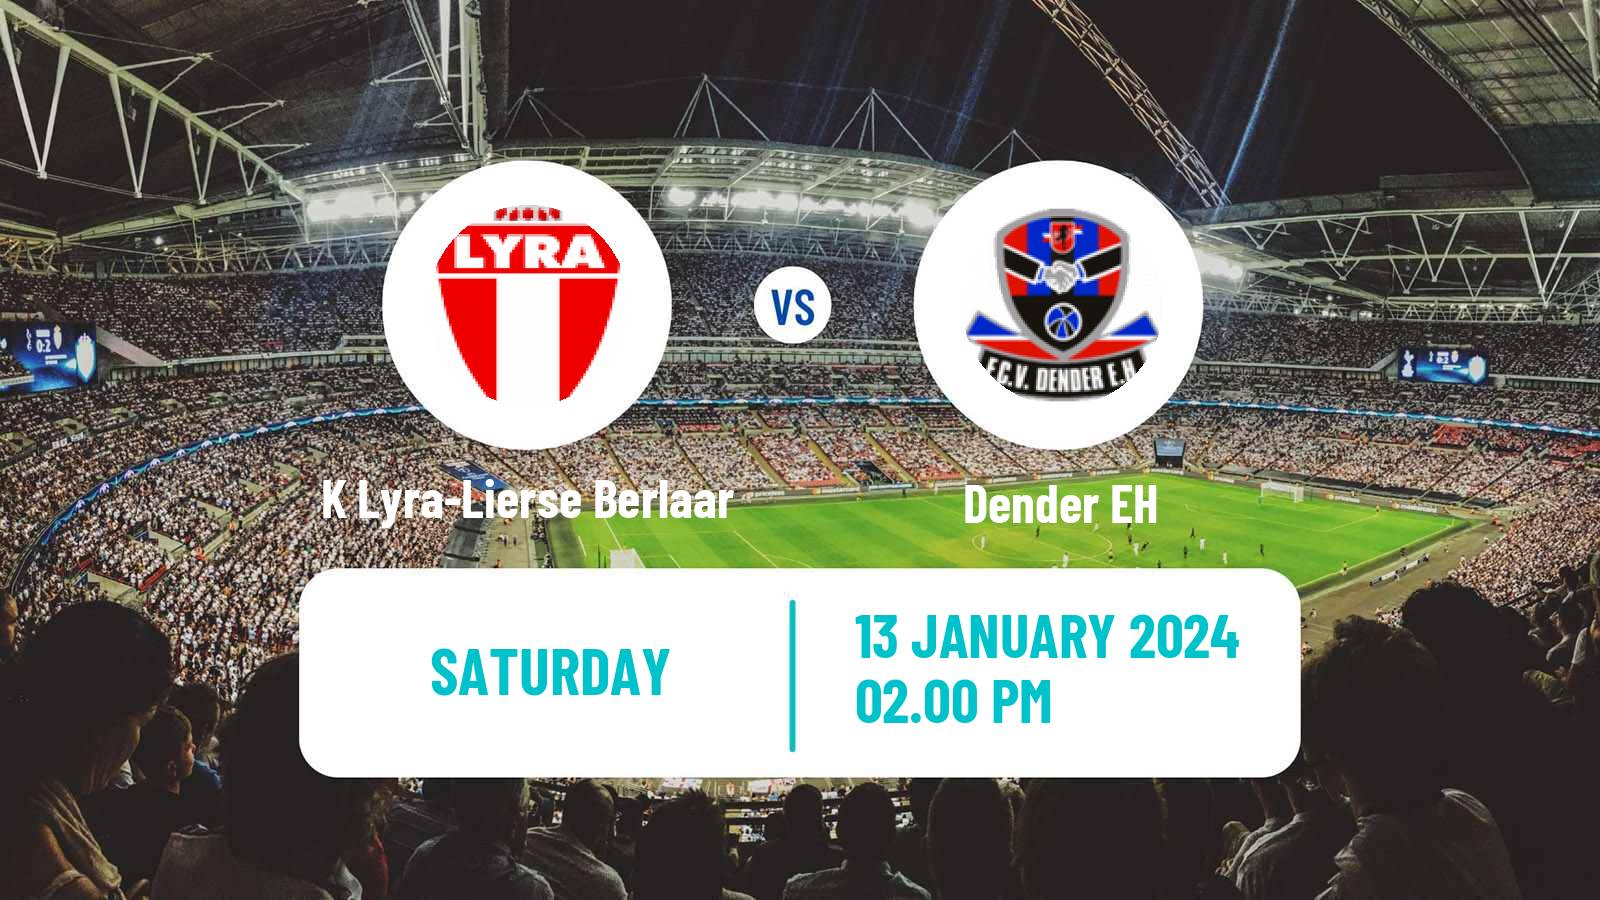 Soccer Belgian Сhallenger Pro League K Lyra-Lierse Berlaar - Dender EH